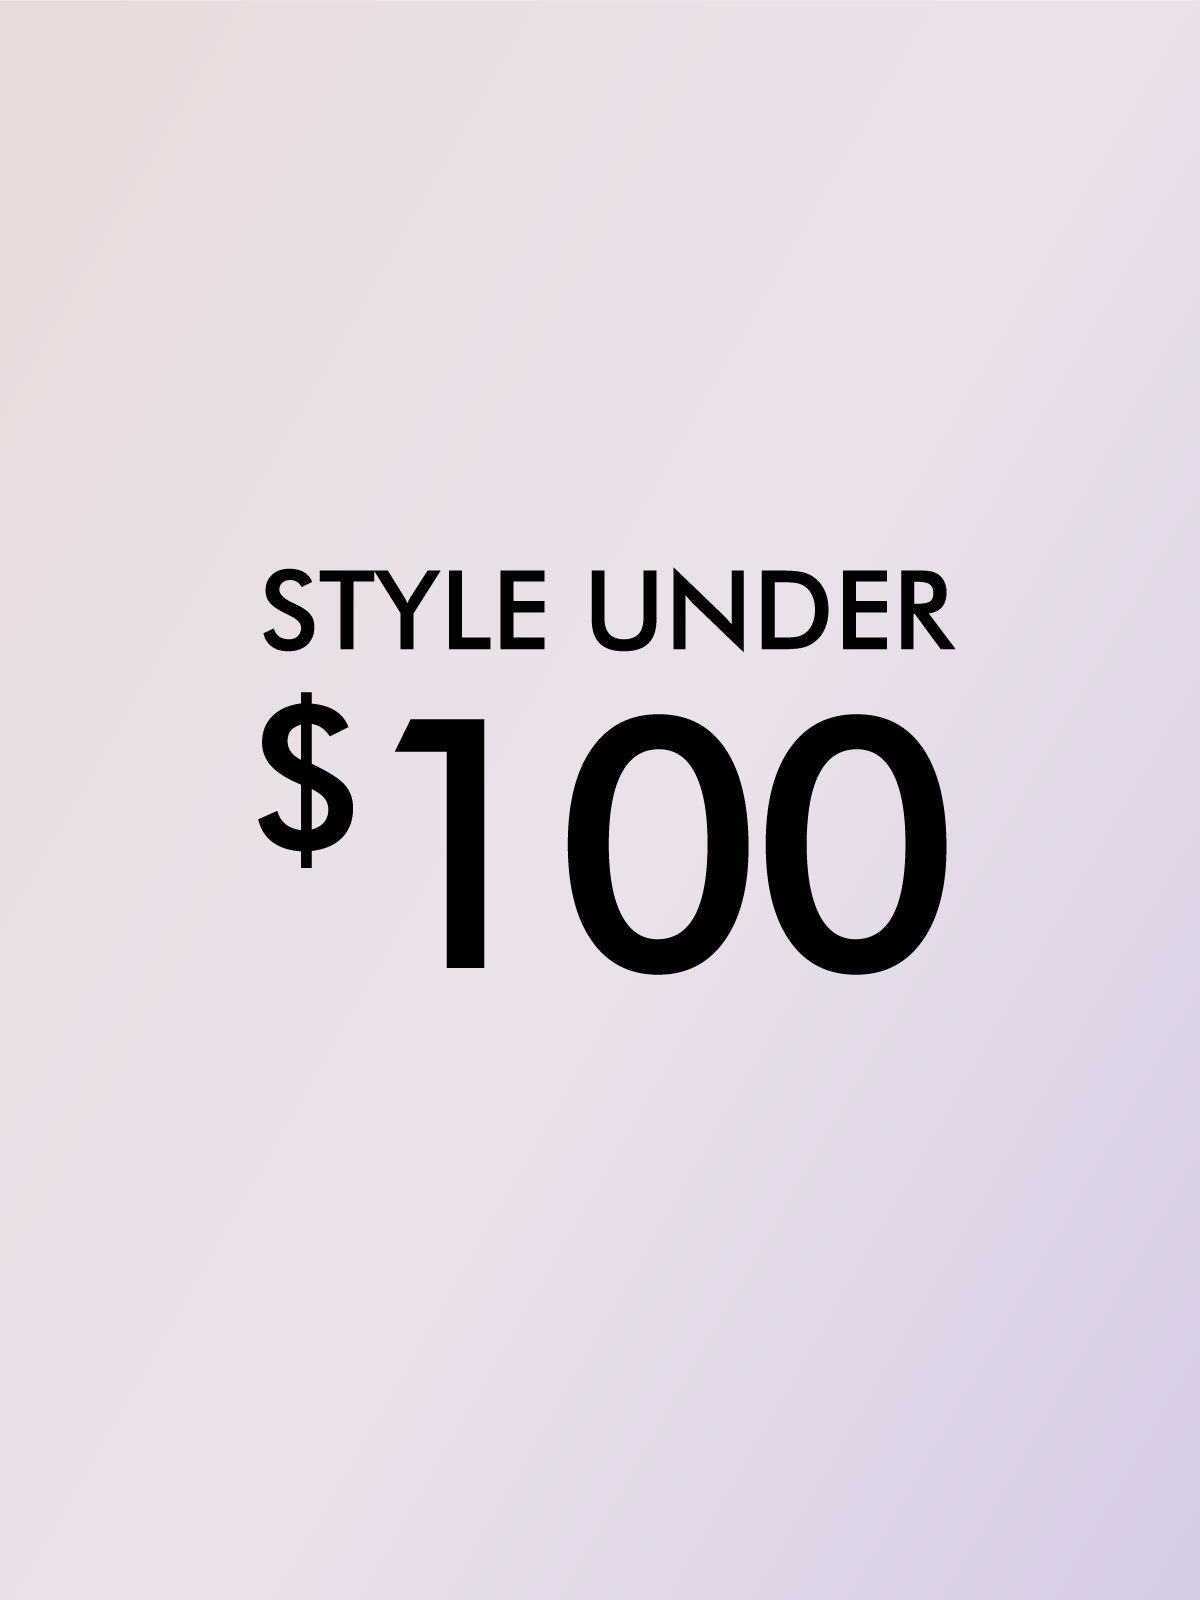 STYLES UNDER $100